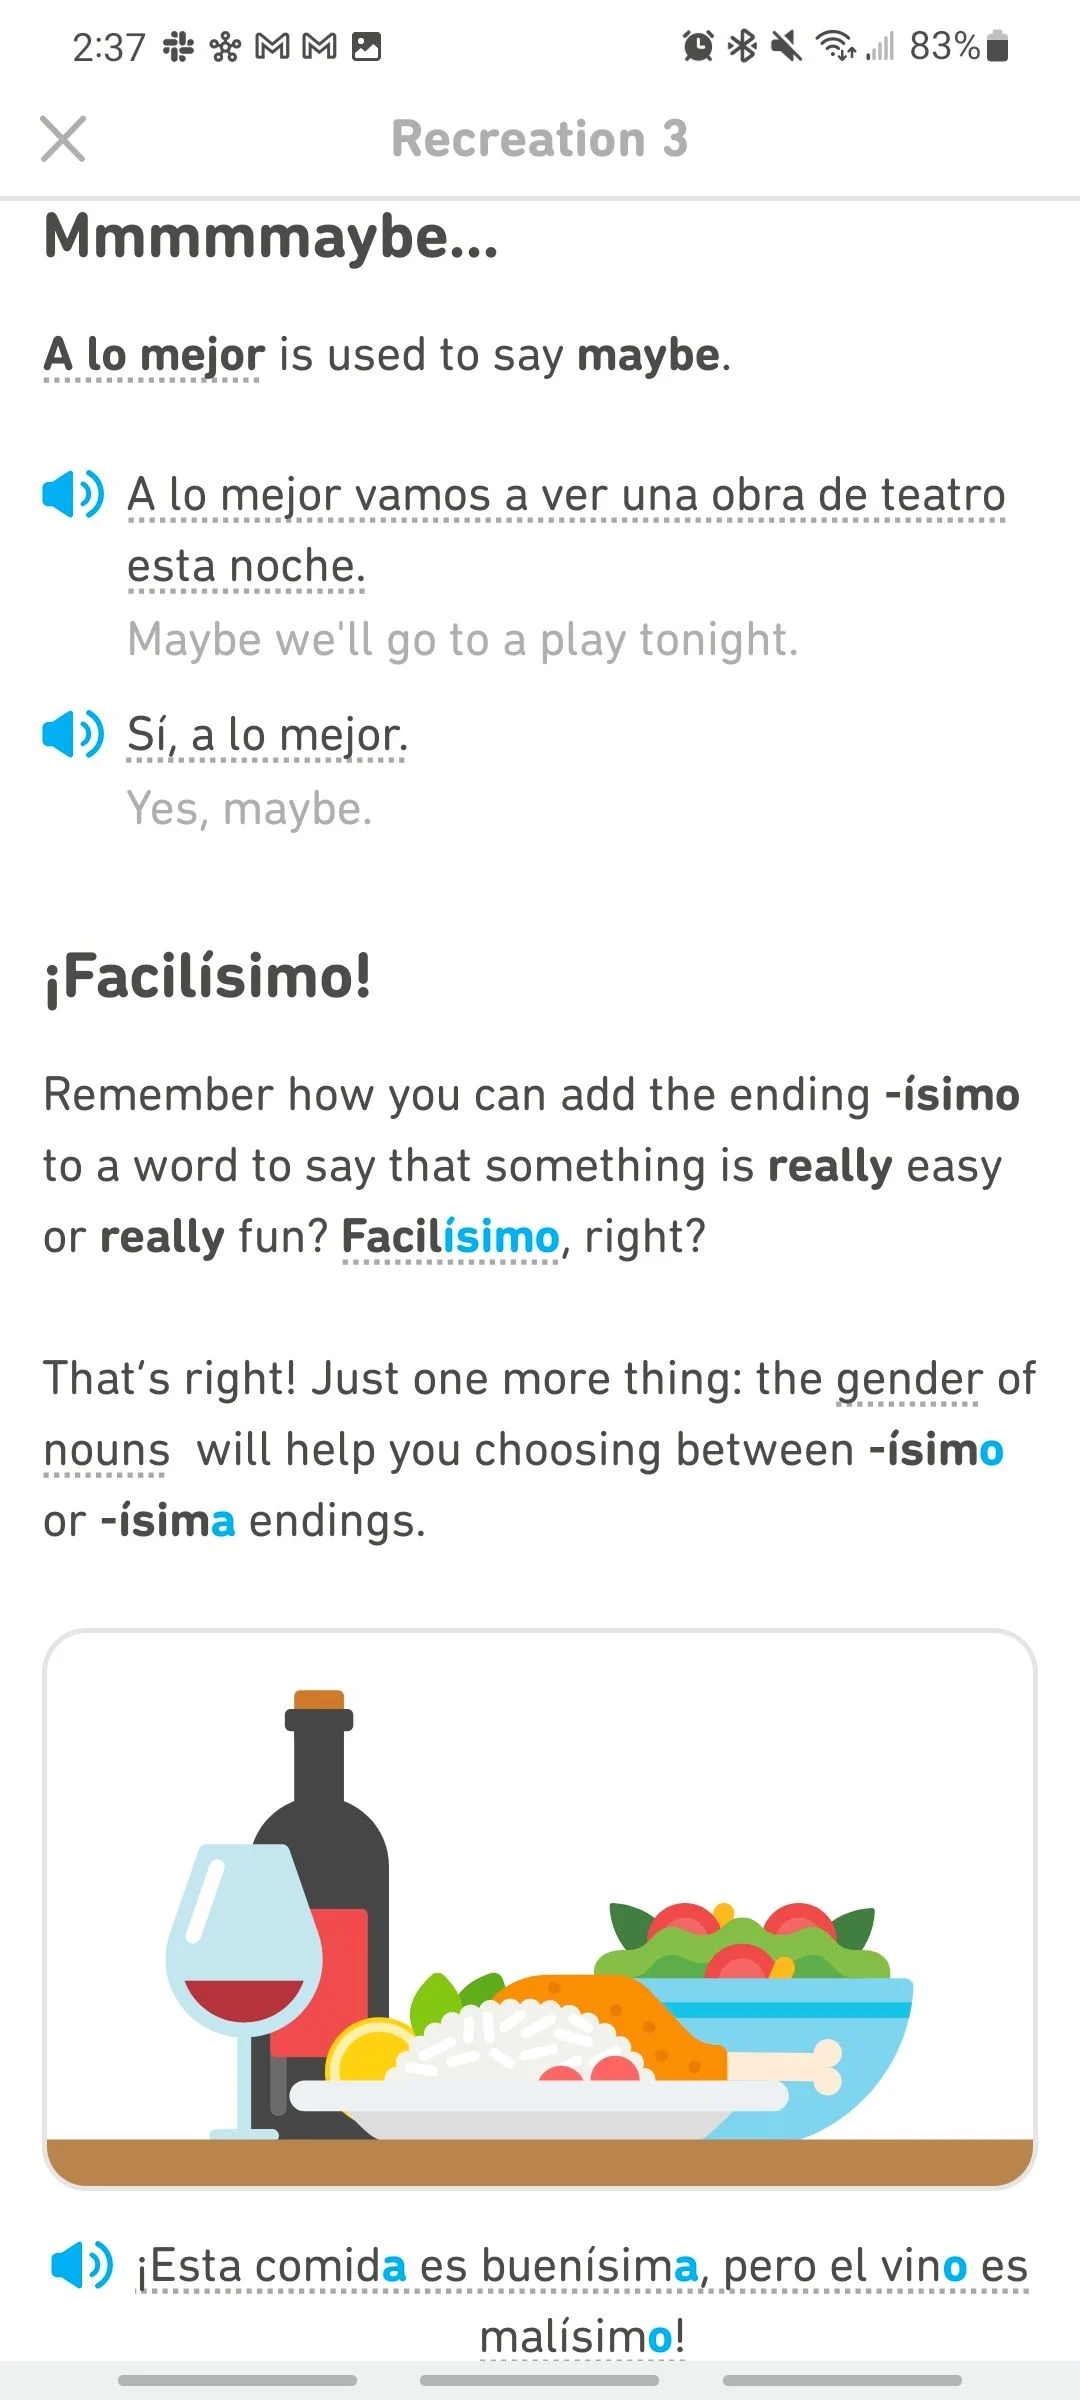 مقایسه Duolingo و Rosetta Stone: یادگیری و ساختار درس